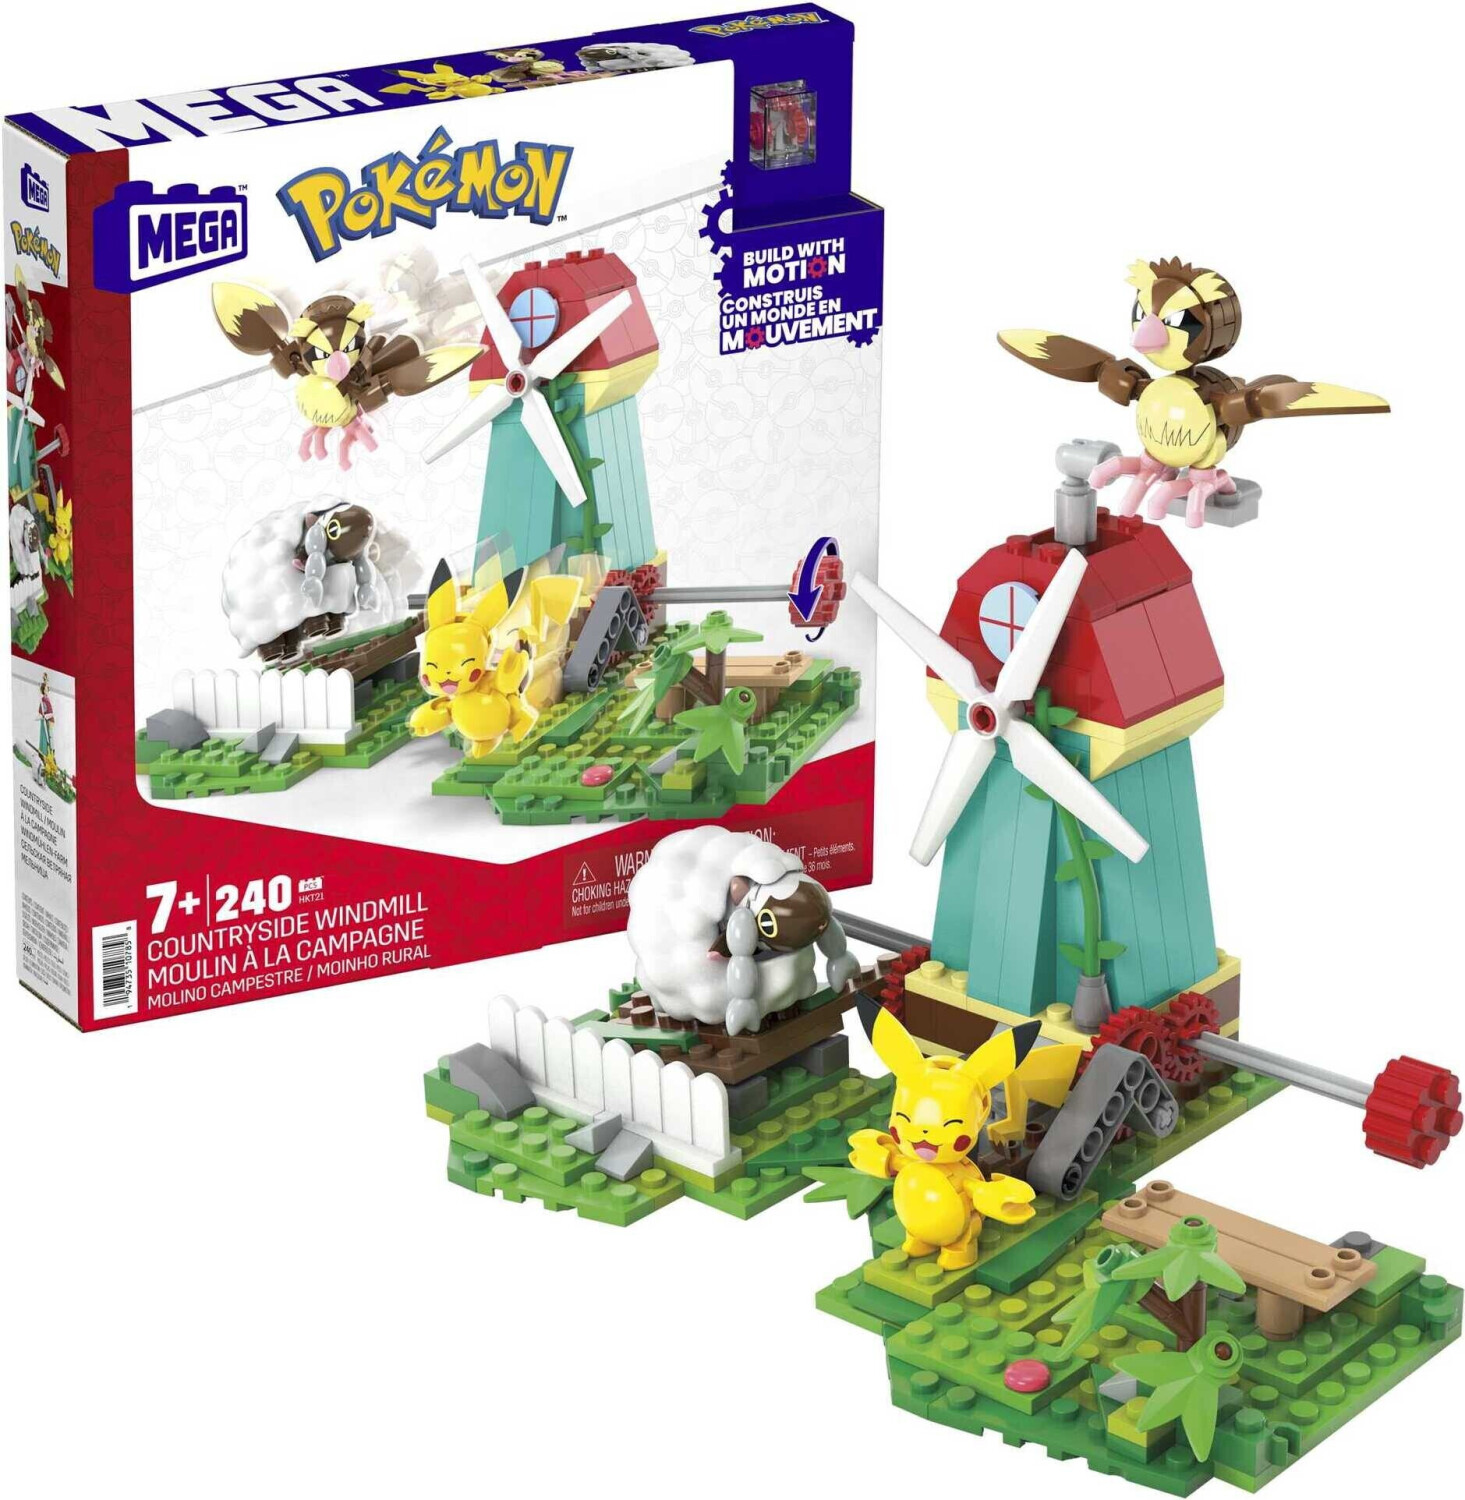 MEGA Pokémon HDL86 jouet de construction